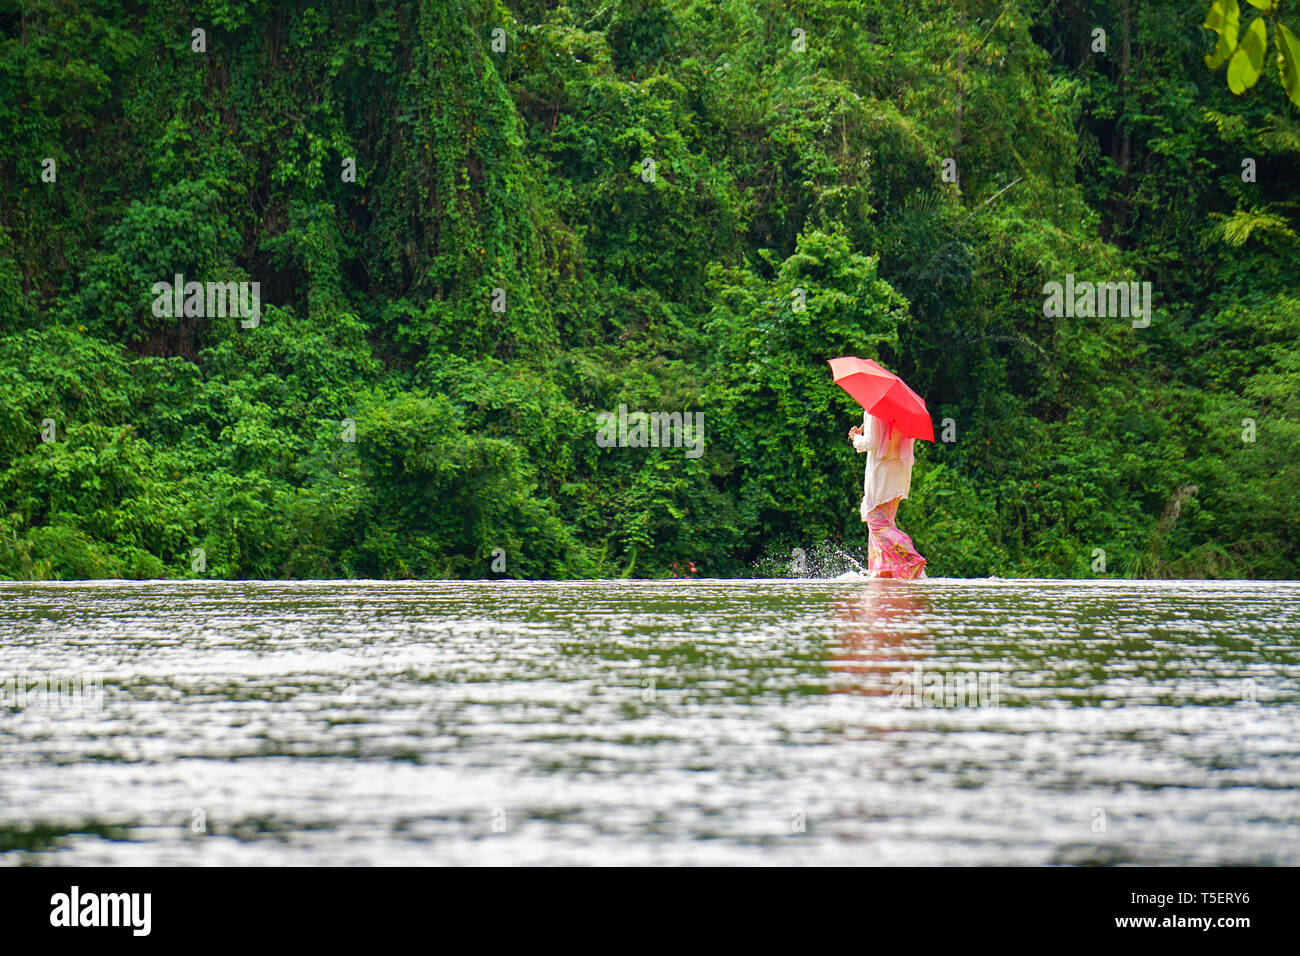 Dame in traditioneller Tracht Kebaya aufgerufen, mit roten Regenschirm zu Fuß auf River Crossing mit grünen Natur Hintergrund. Bild für Reisen geeignet Stockfoto